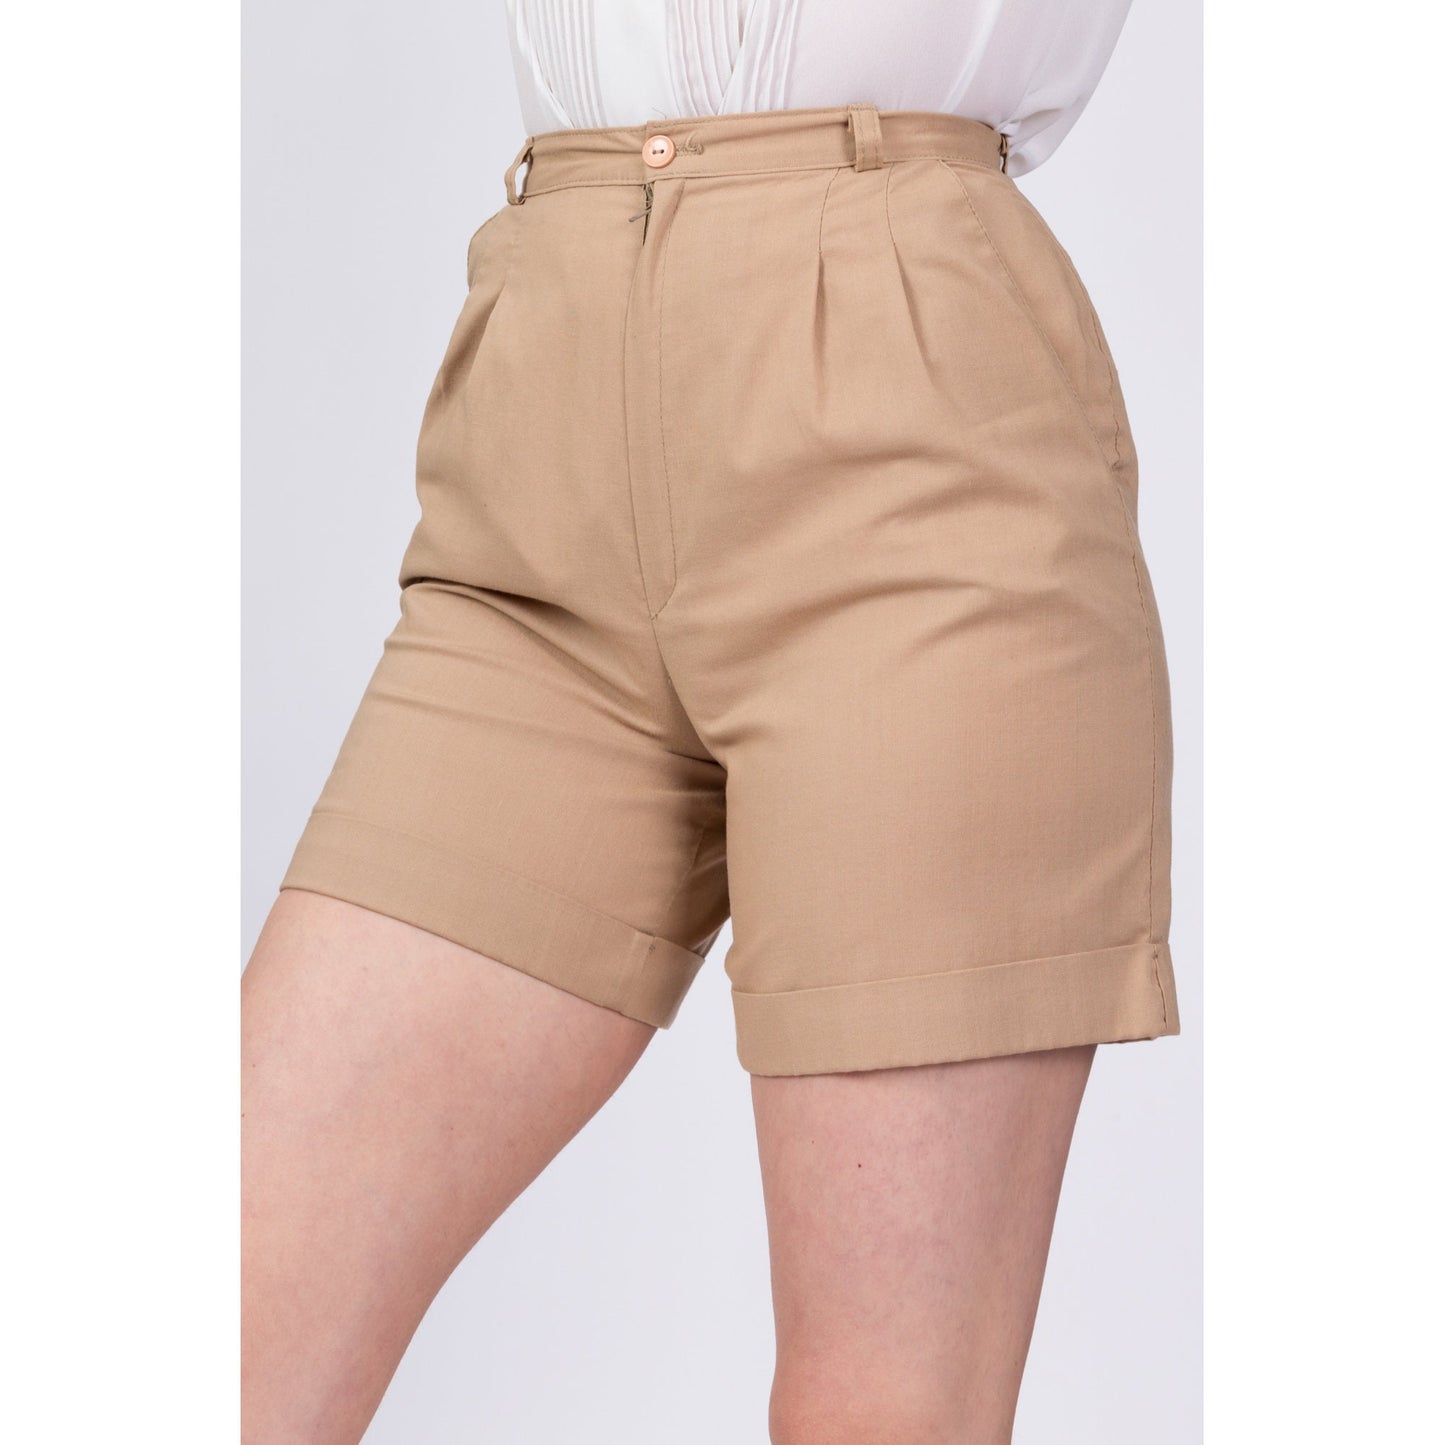 70s High Waist Khaki Shorts - Extra Small, 24" 